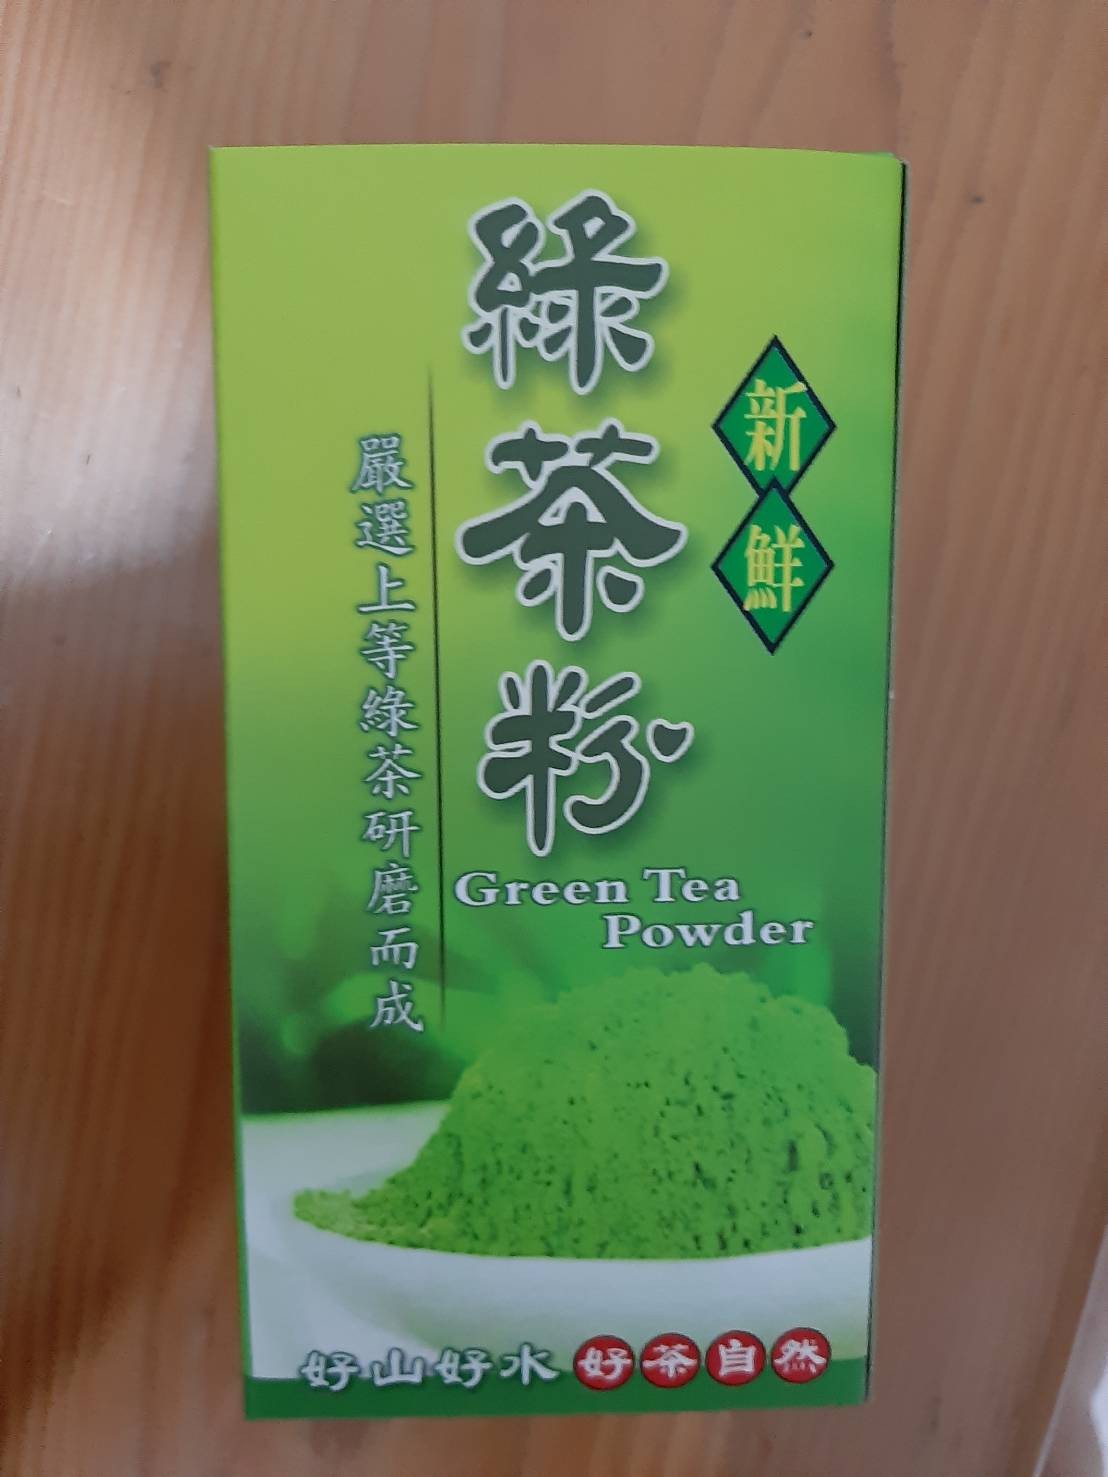 松輝茶園綠茶粉 宜蘭縣農會 綠茶